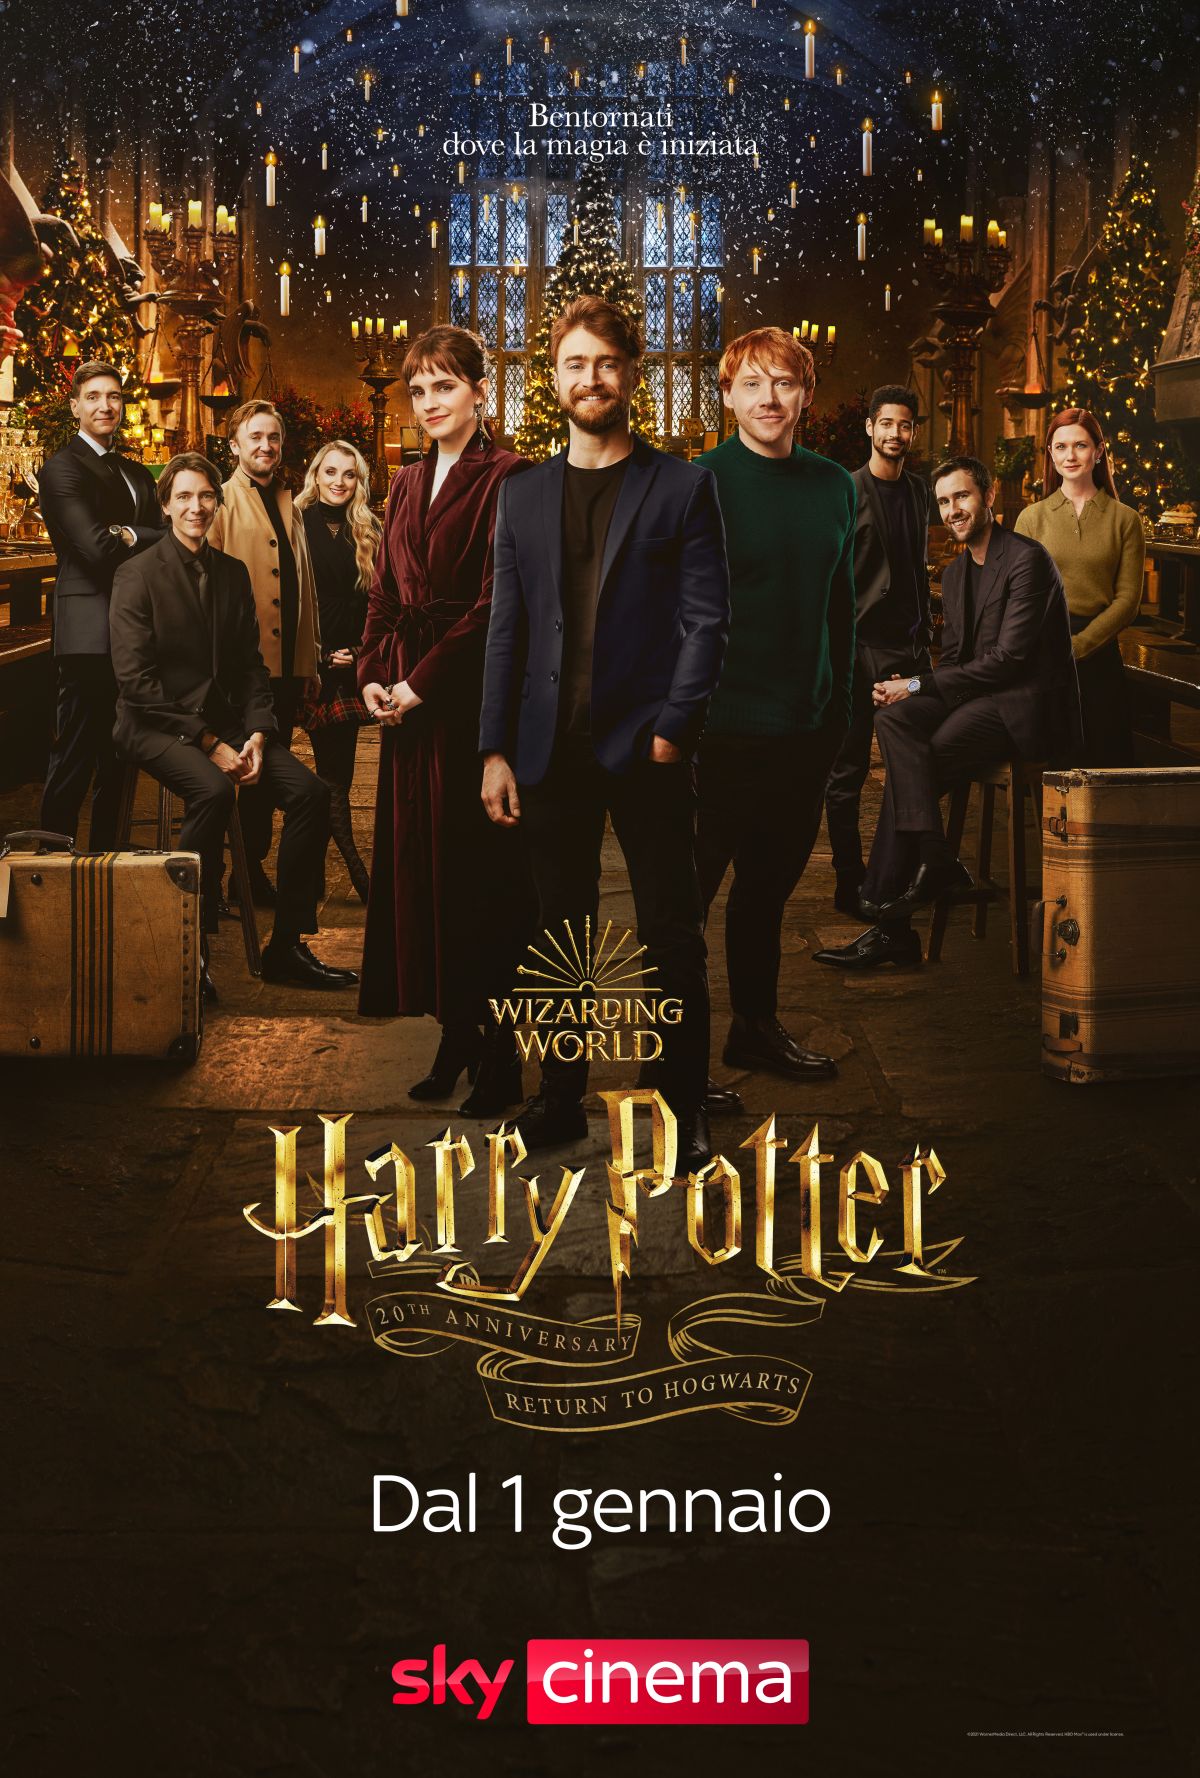 Harry Potter, i protagonisti nel poster della reunion